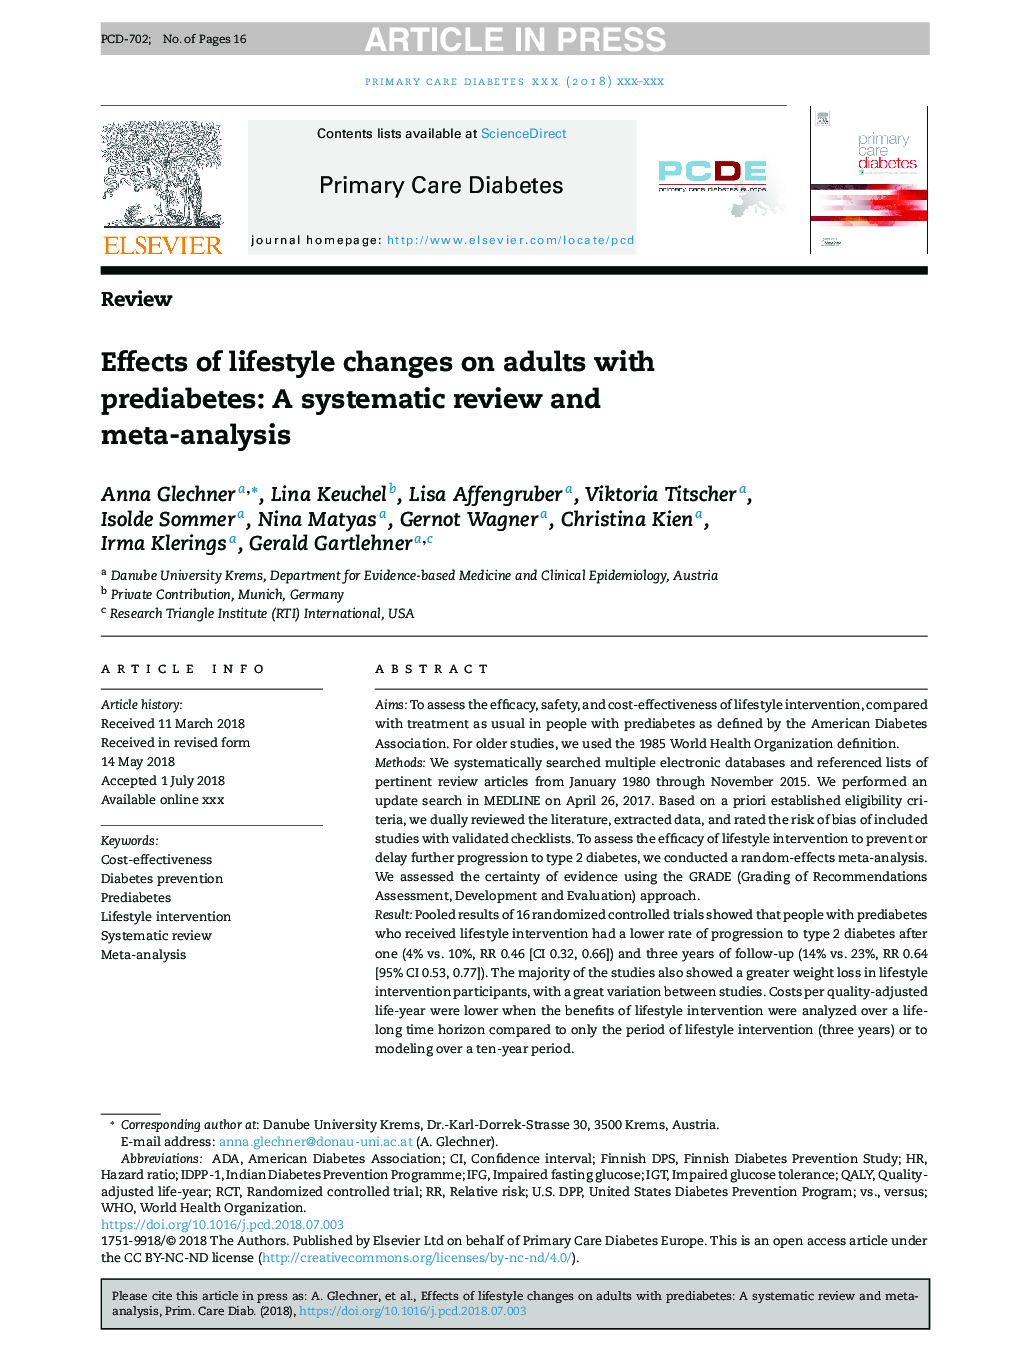 اثرات تغییرات شیوه زندگی در بزرگسالان مبتلا به دیابت: یک بررسی منظم و متاآنالیز